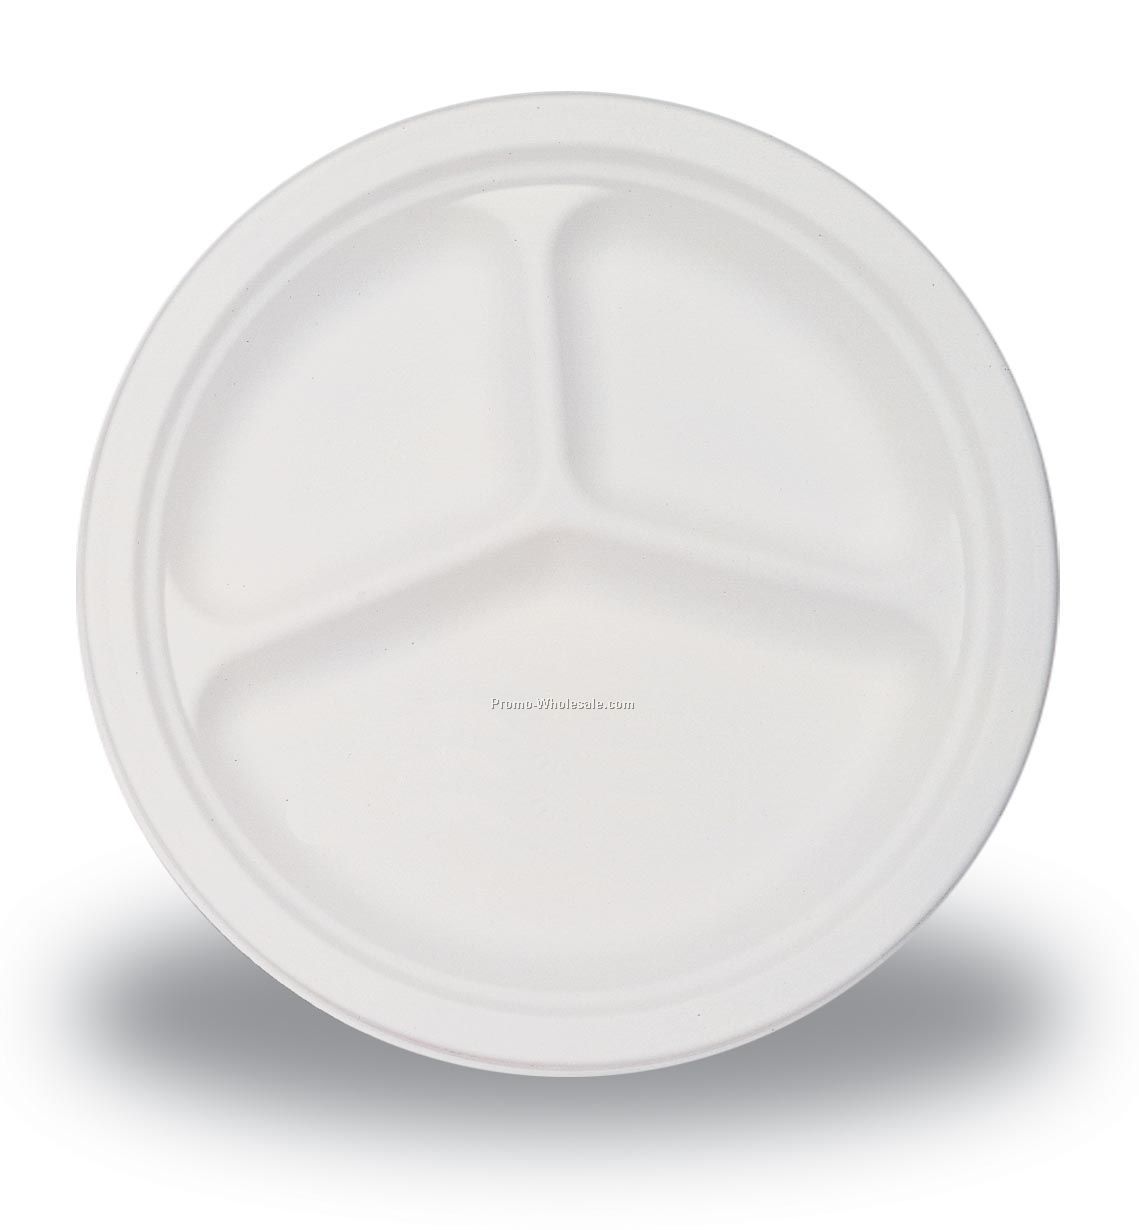 The 500 Line Premium 10" White Plastic Compartment Plate